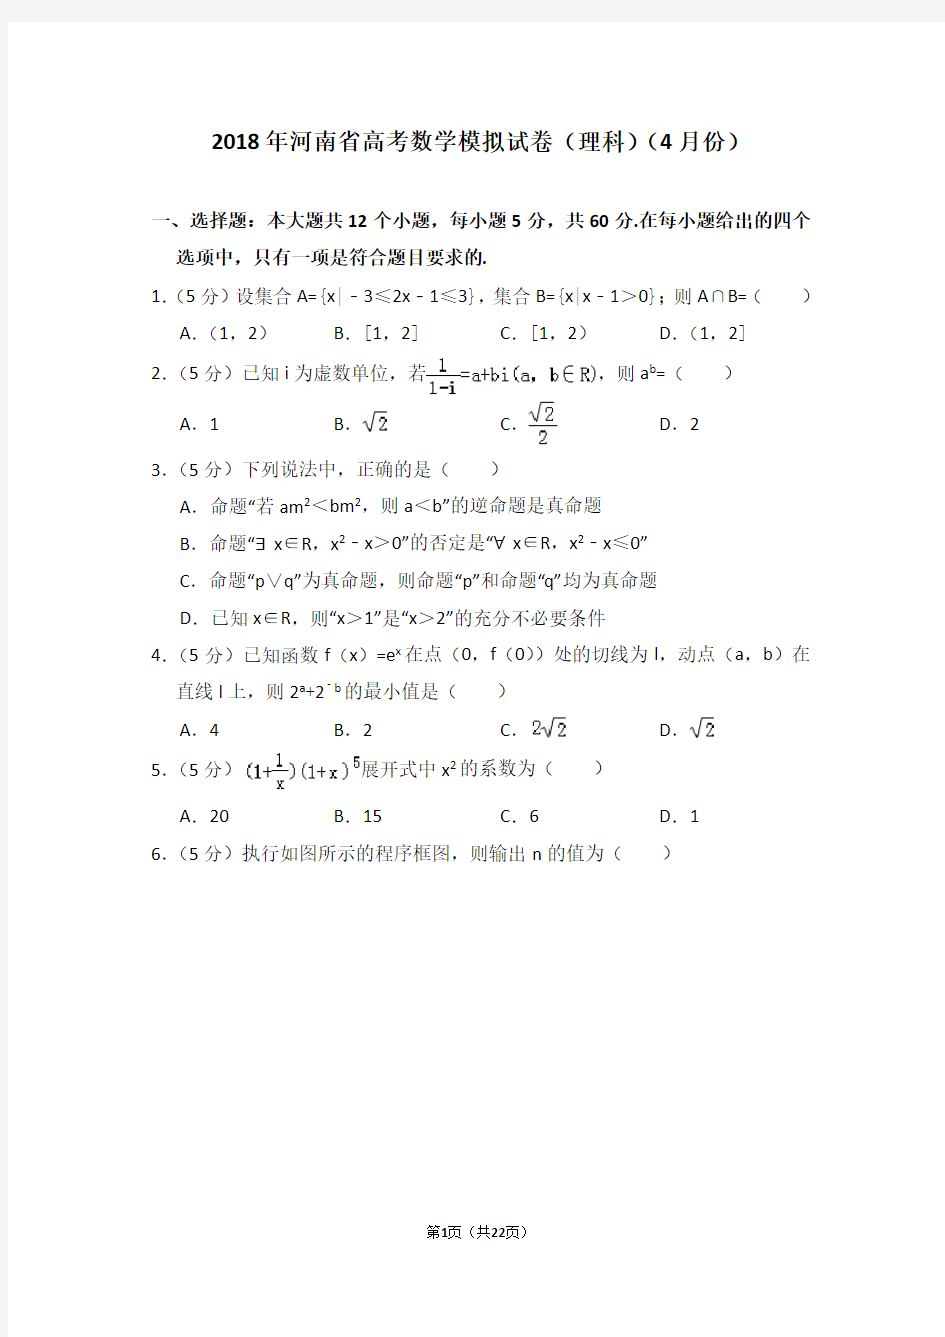 (完整版)2018年河南省高考数学模拟试卷(理科)(4月份)